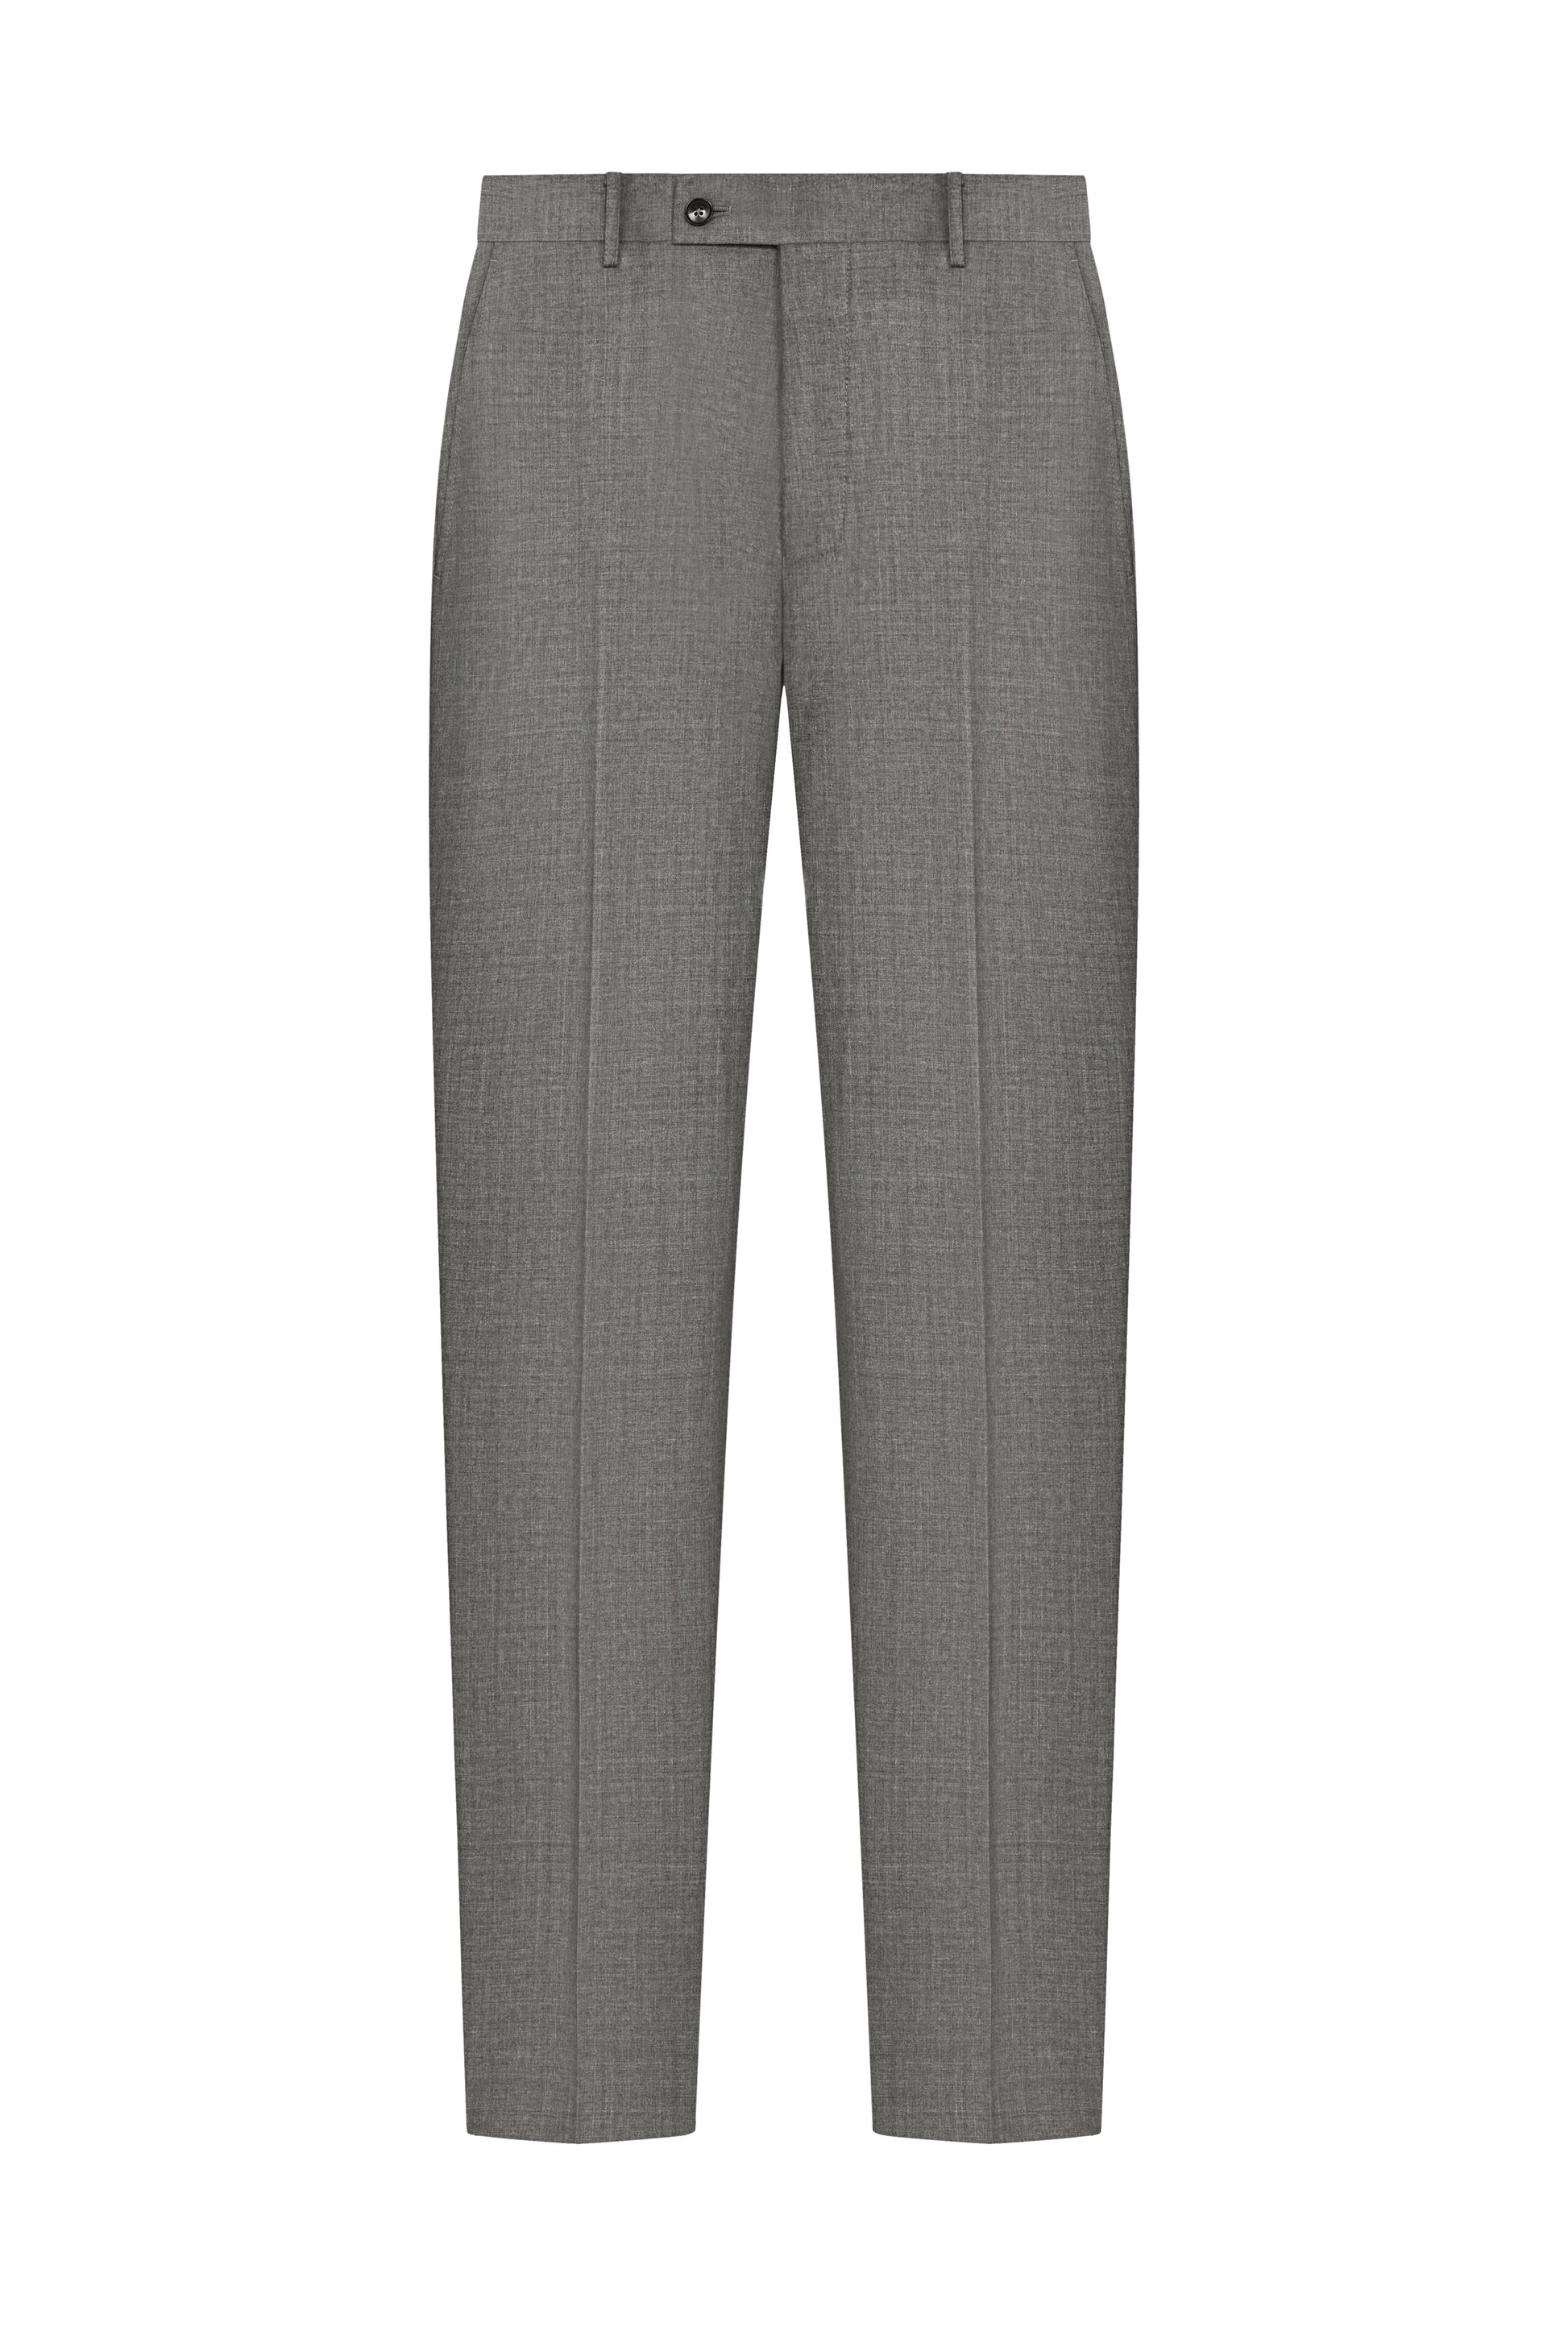 Cool Grey Plain Weave Suit